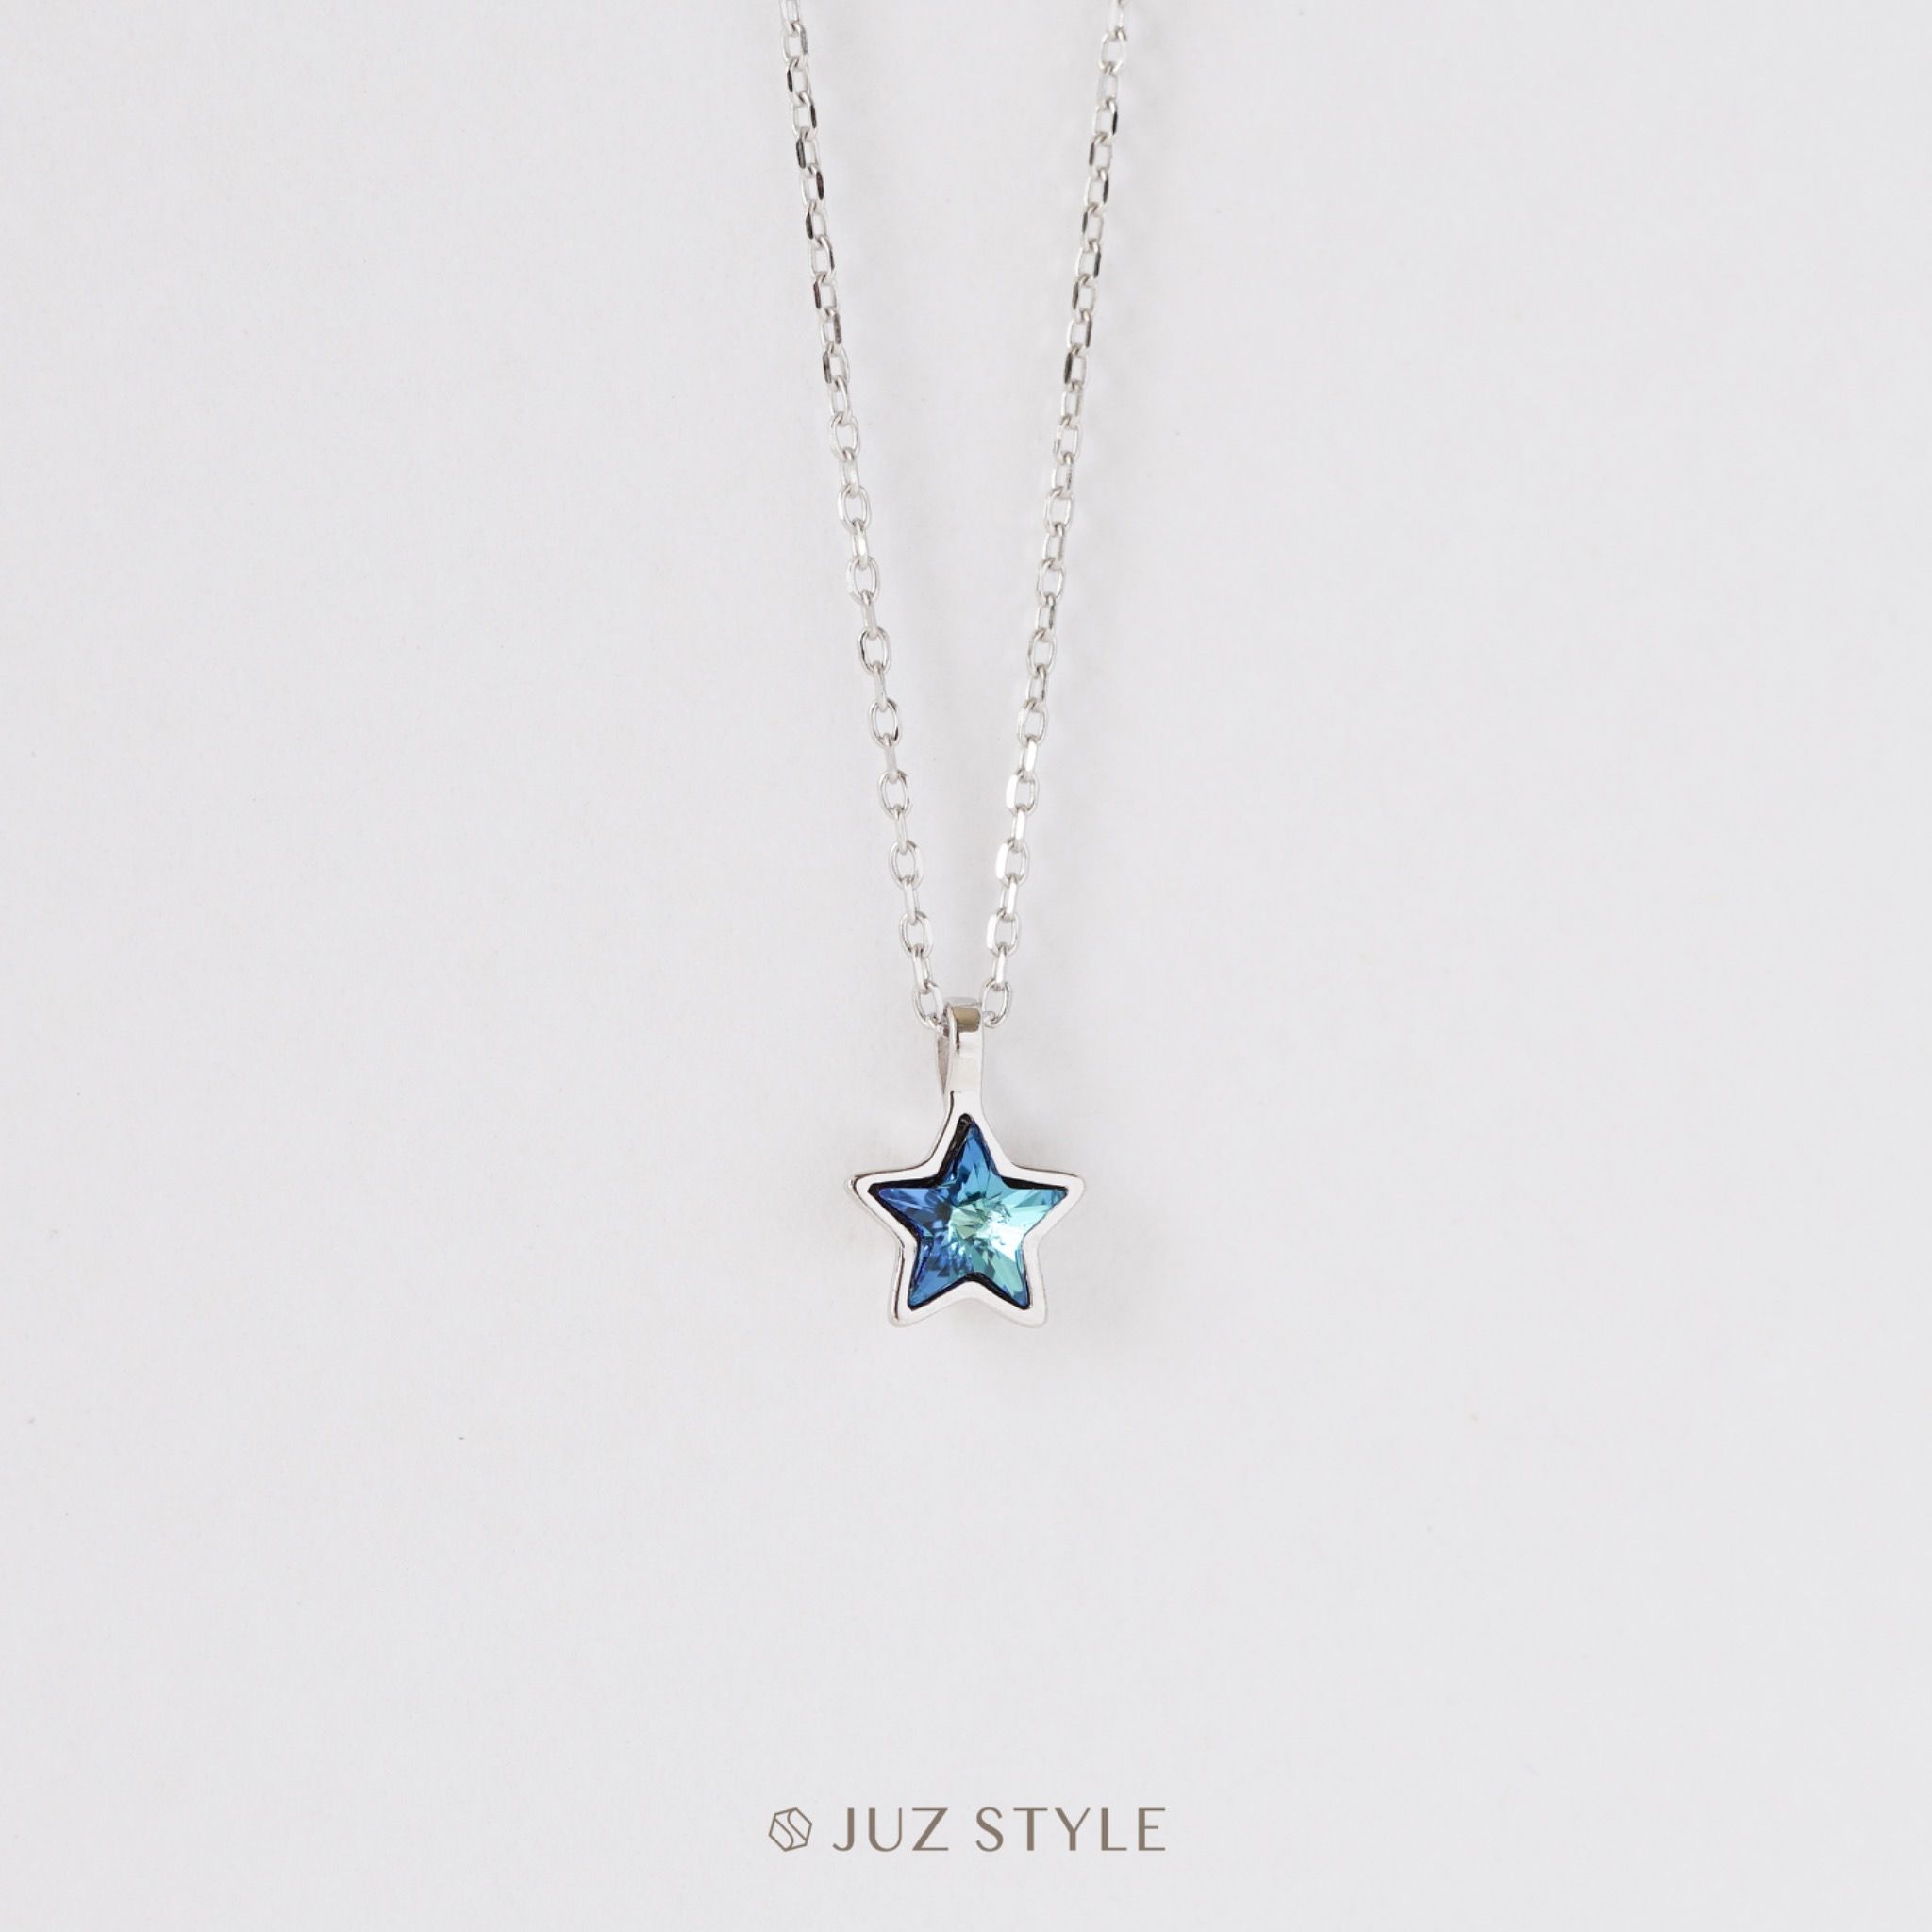  Dây chuyền bạc Blue star 